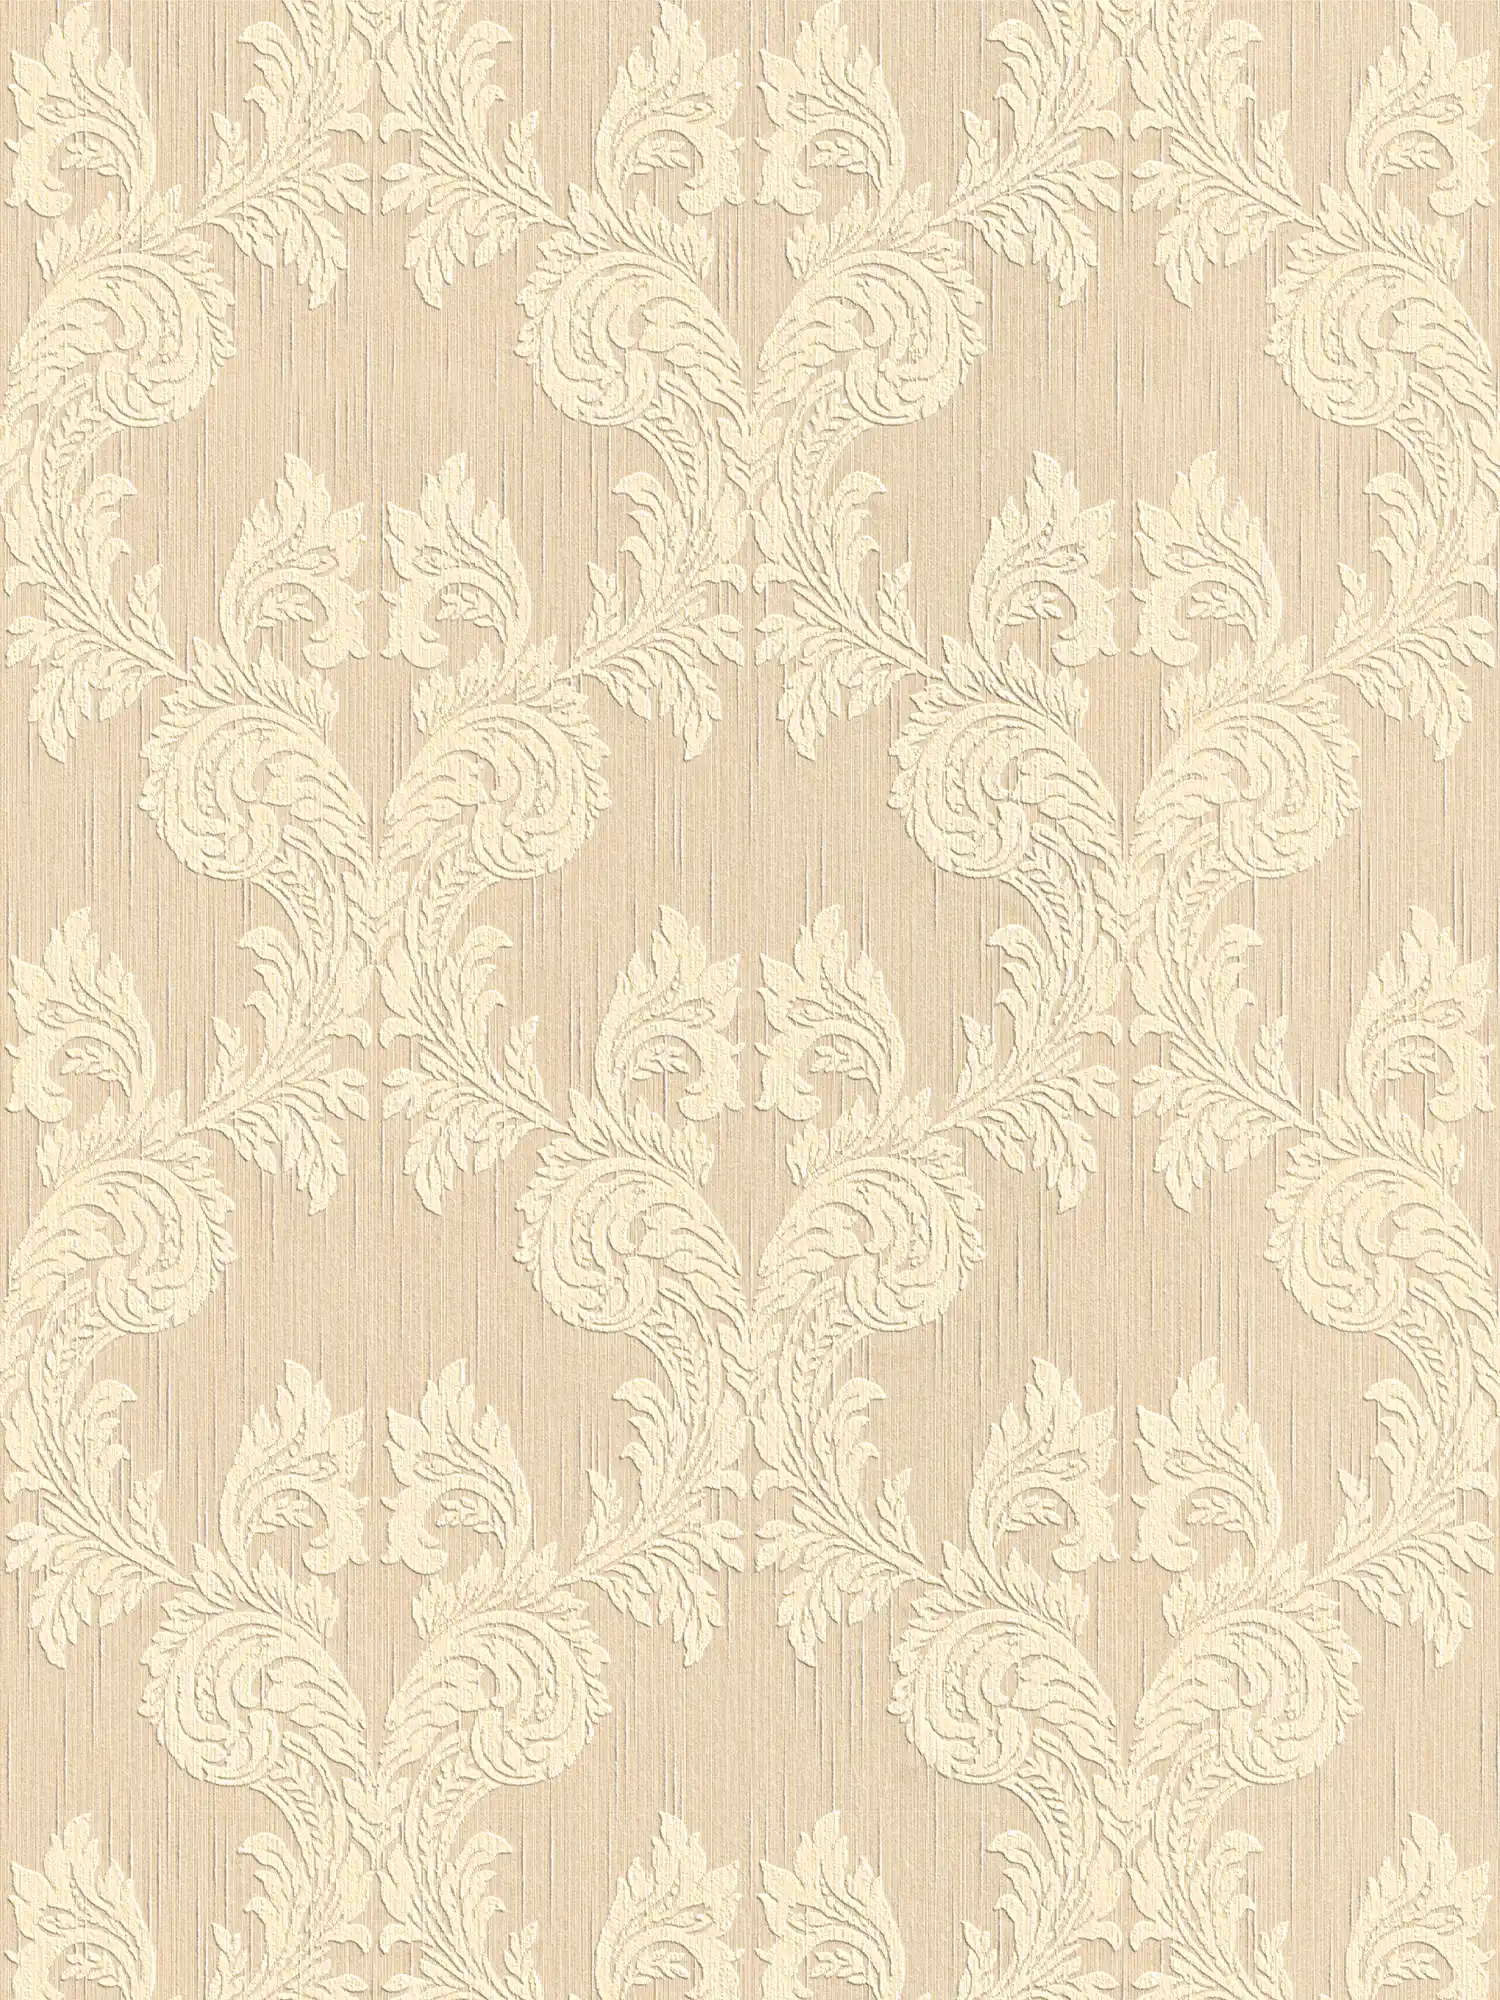 Behang met textiellook en ornament patroon in klassieke stijl - beige
